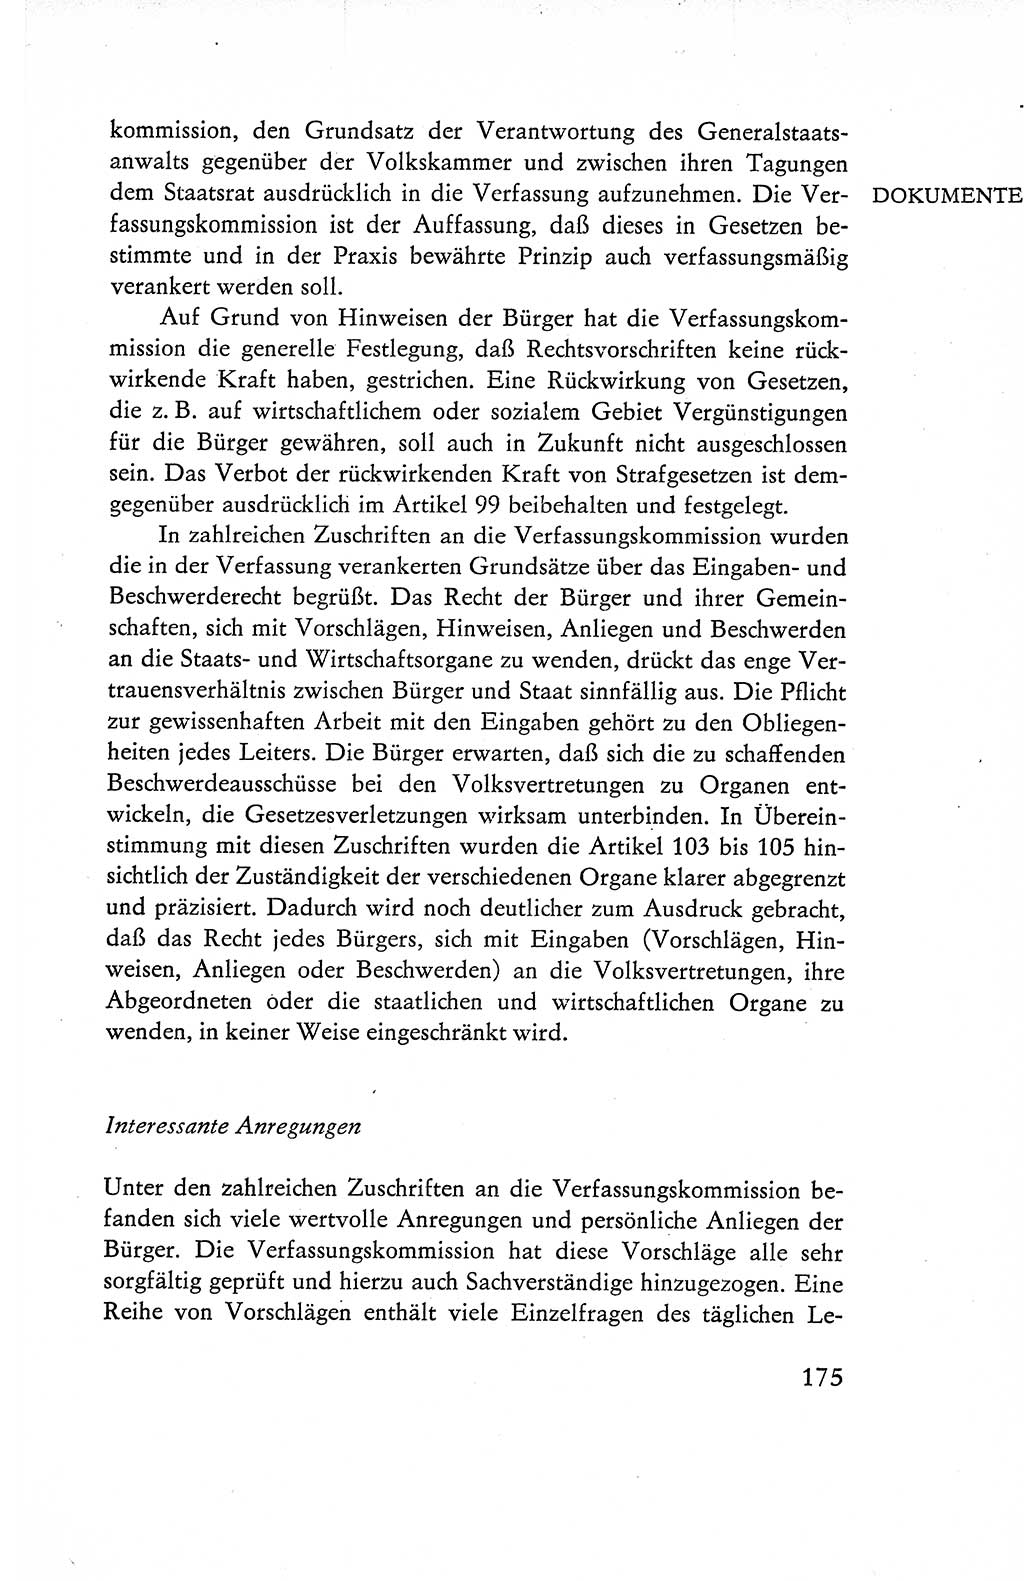 Verfassung der Deutschen Demokratischen Republik (DDR), Dokumente, Kommentar 1969, Band 1, Seite 175 (Verf. DDR Dok. Komm. 1969, Bd. 1, S. 175)